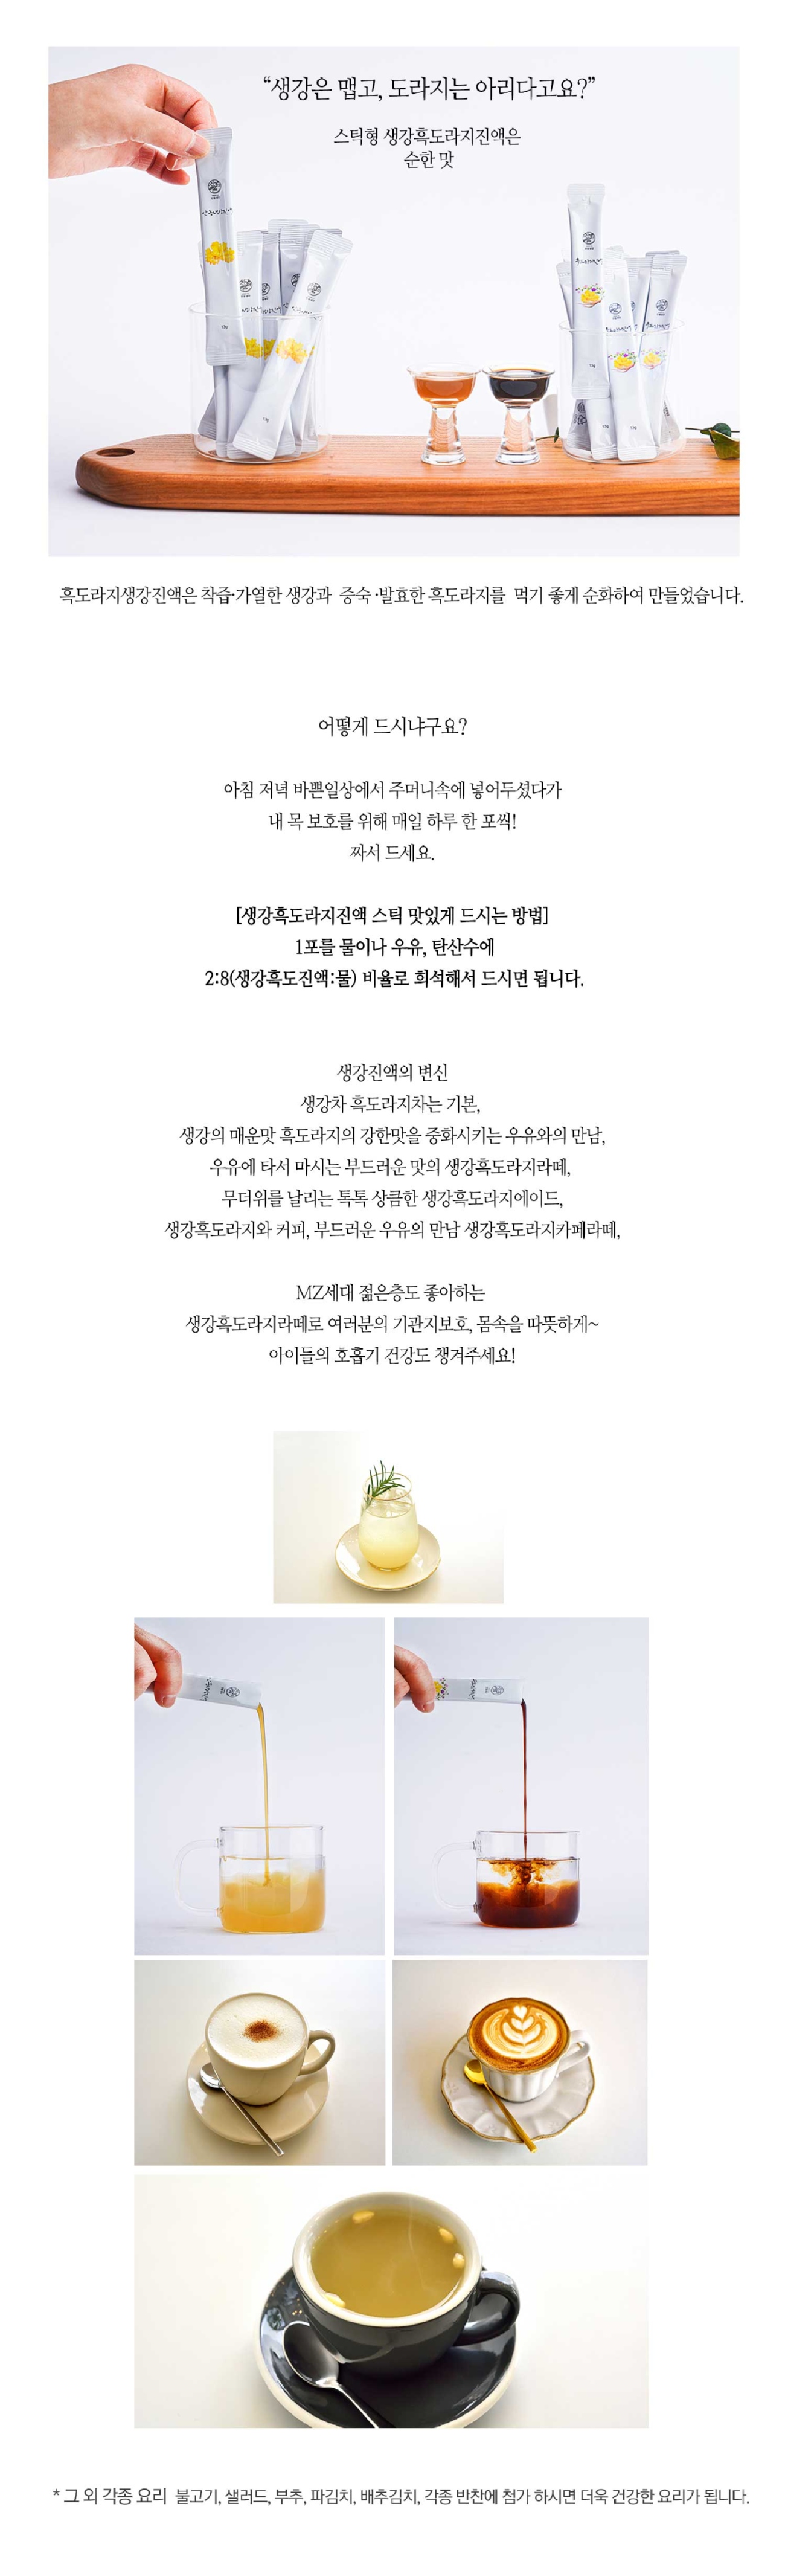 03_스틱형-흑생-섭취방법(음료)-최종.jpg